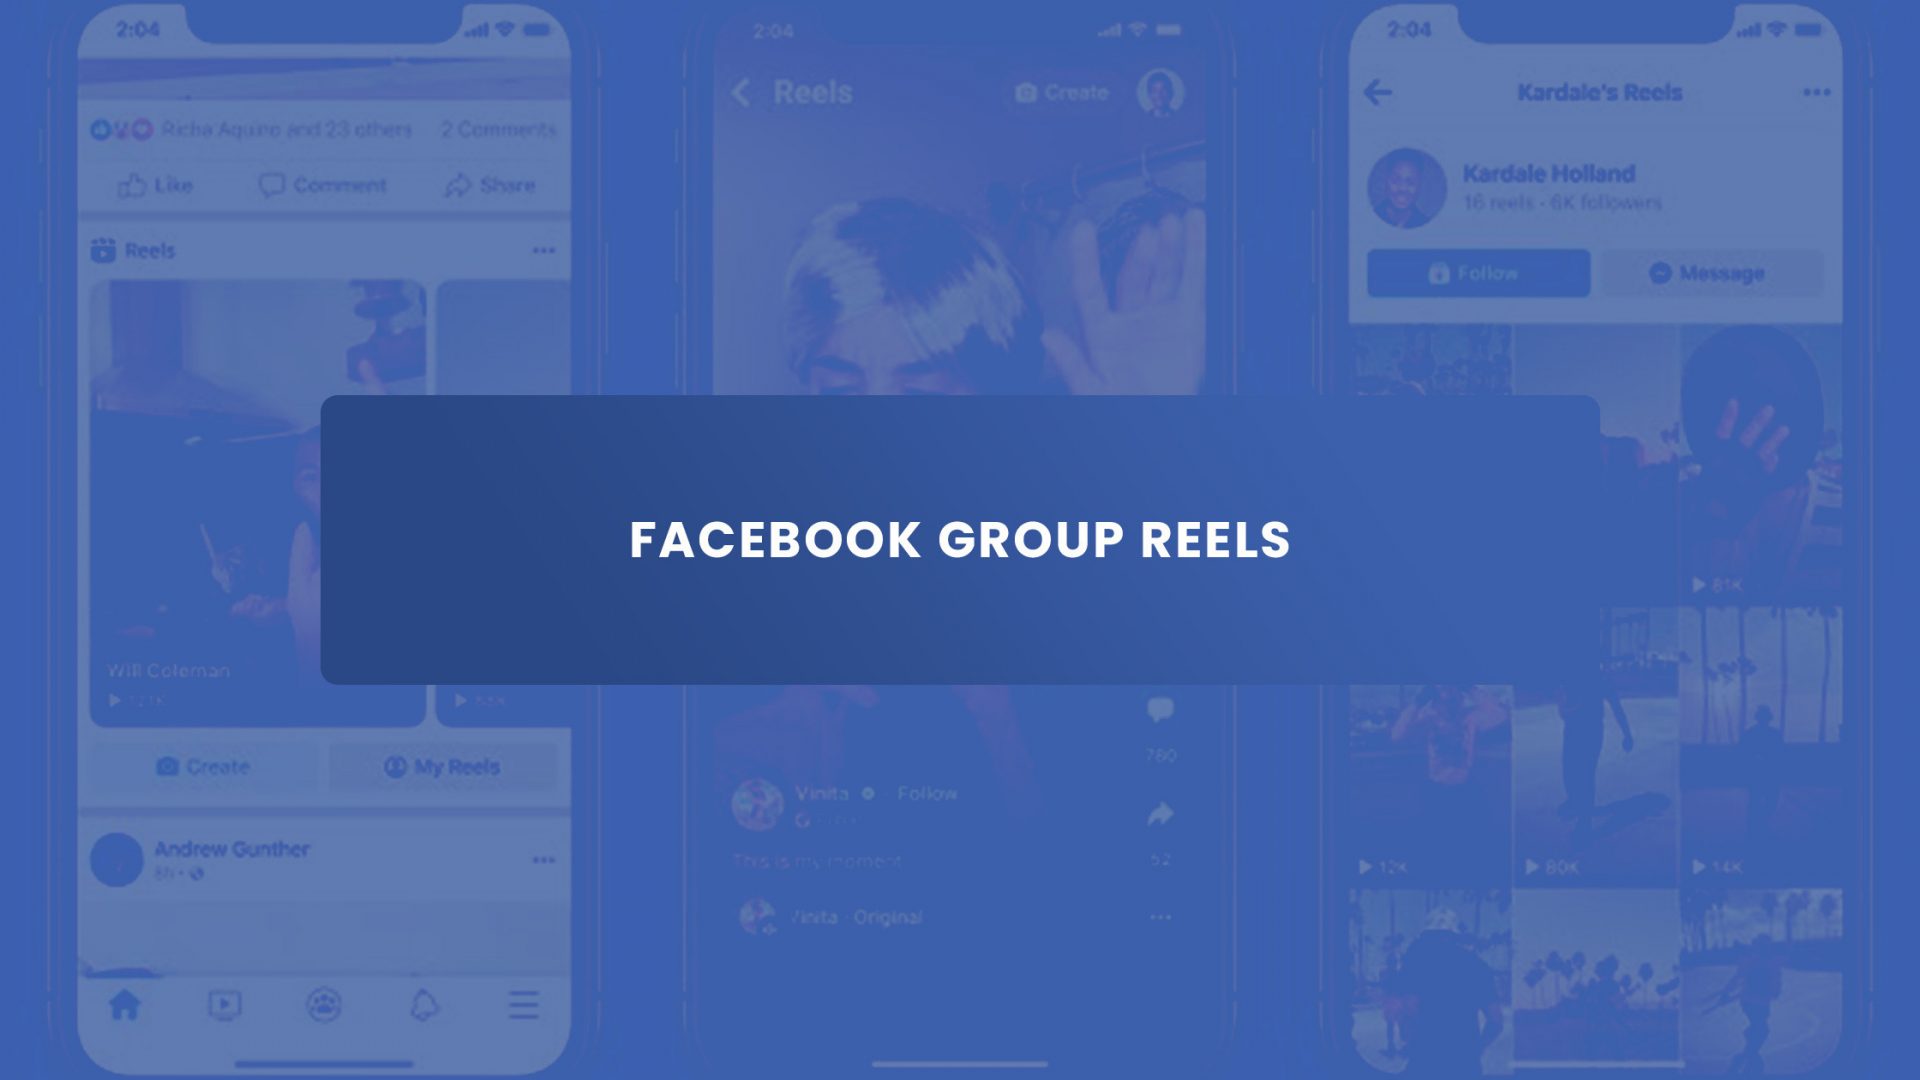 Facebook group reels